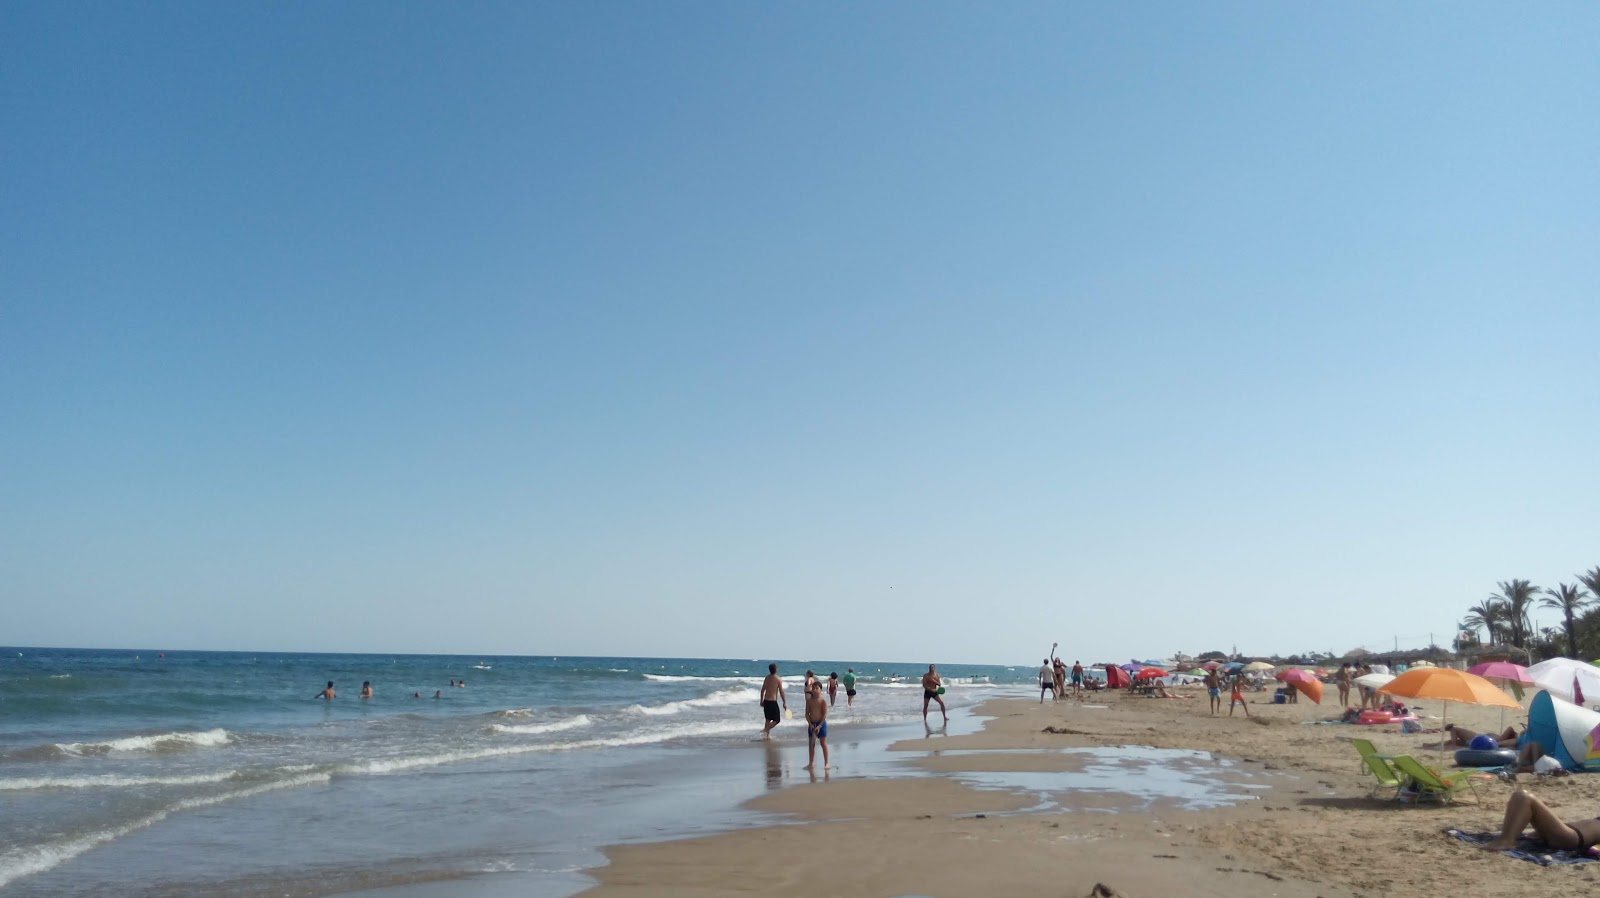 Platja de Manyetes'in fotoğrafı taşlı kum yüzey ile